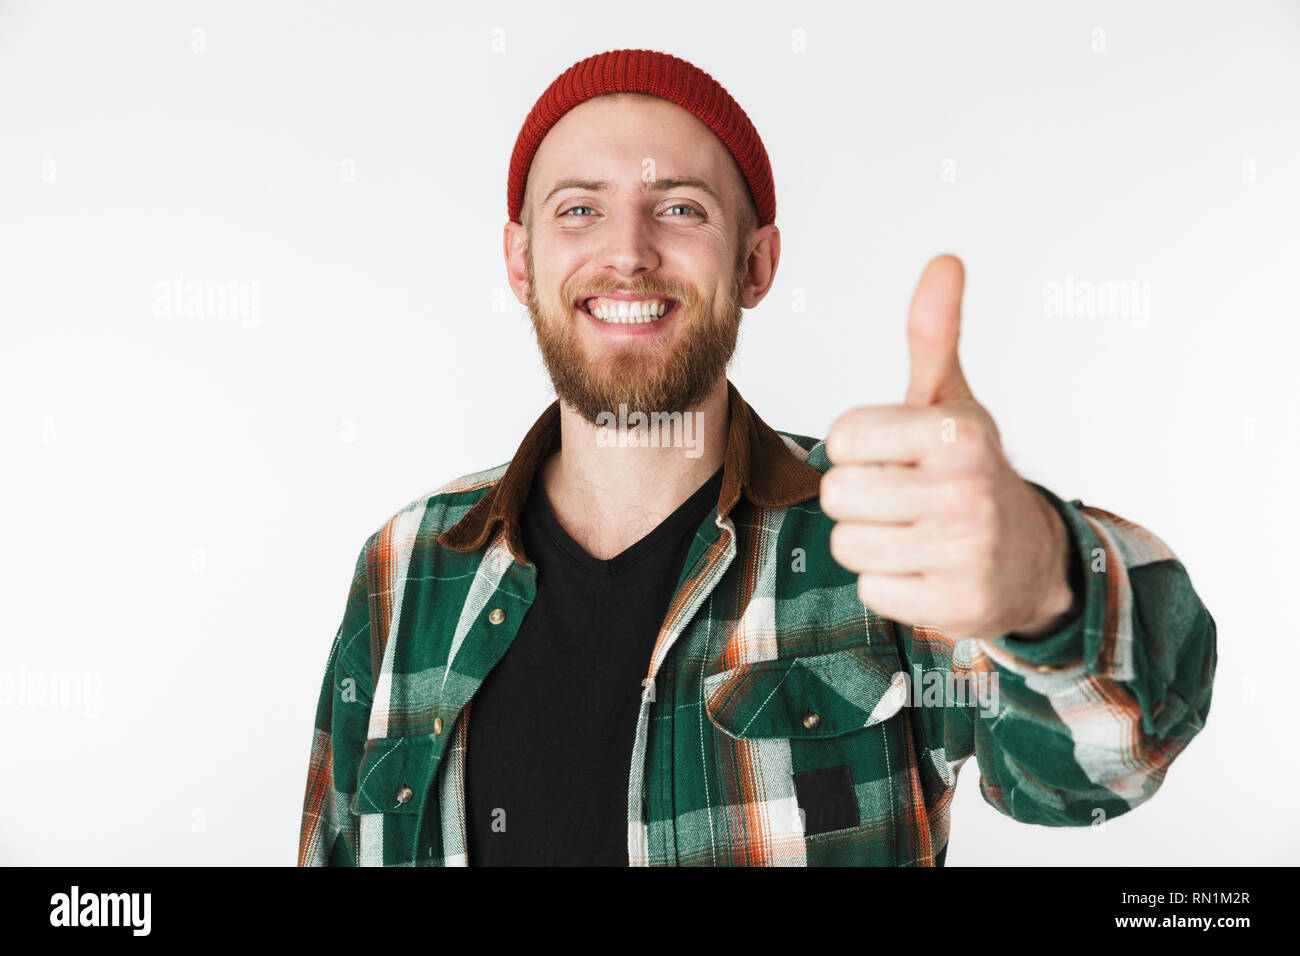 Ritratto di europeo uomo barbuto che indossa un cappello e plaid shirt che mostra un pollice alzato in piedi isolato su sfondo bianco Foto Stock